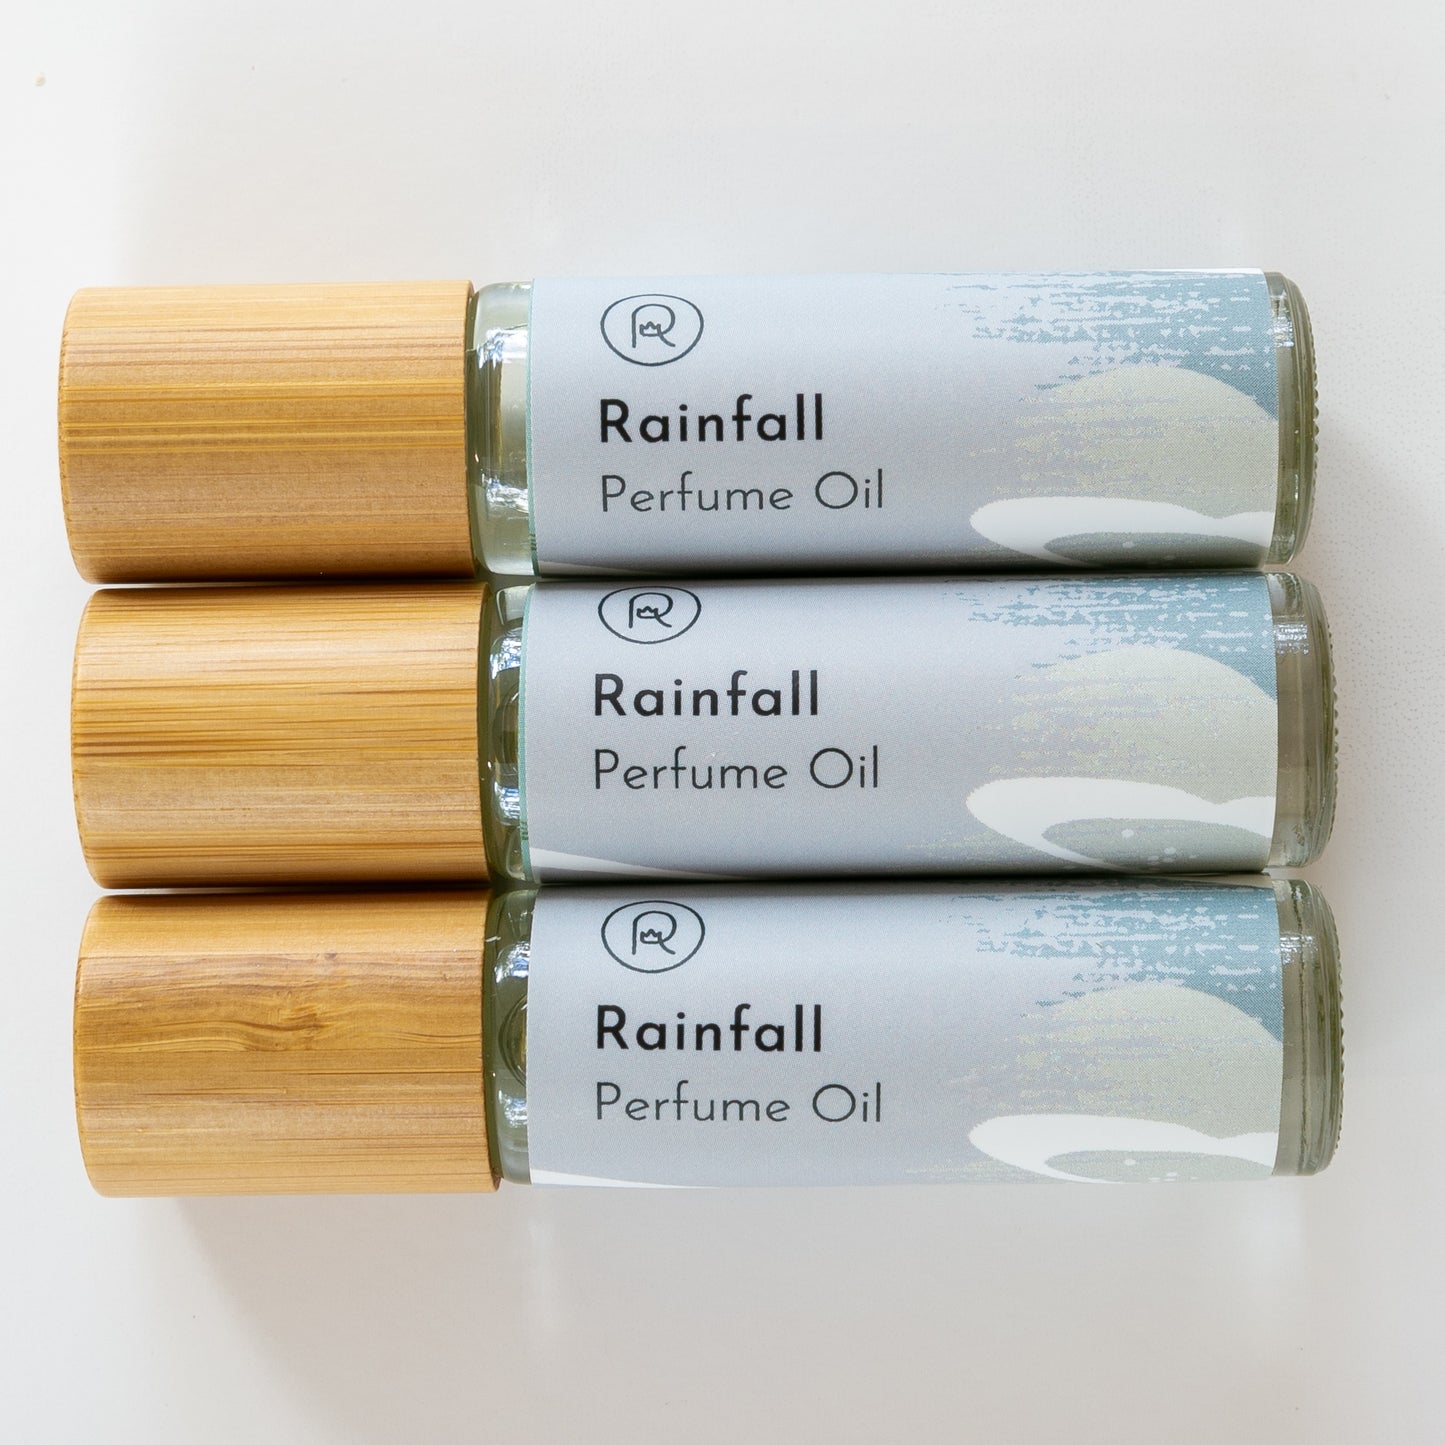 Rainfall Perfume Oil